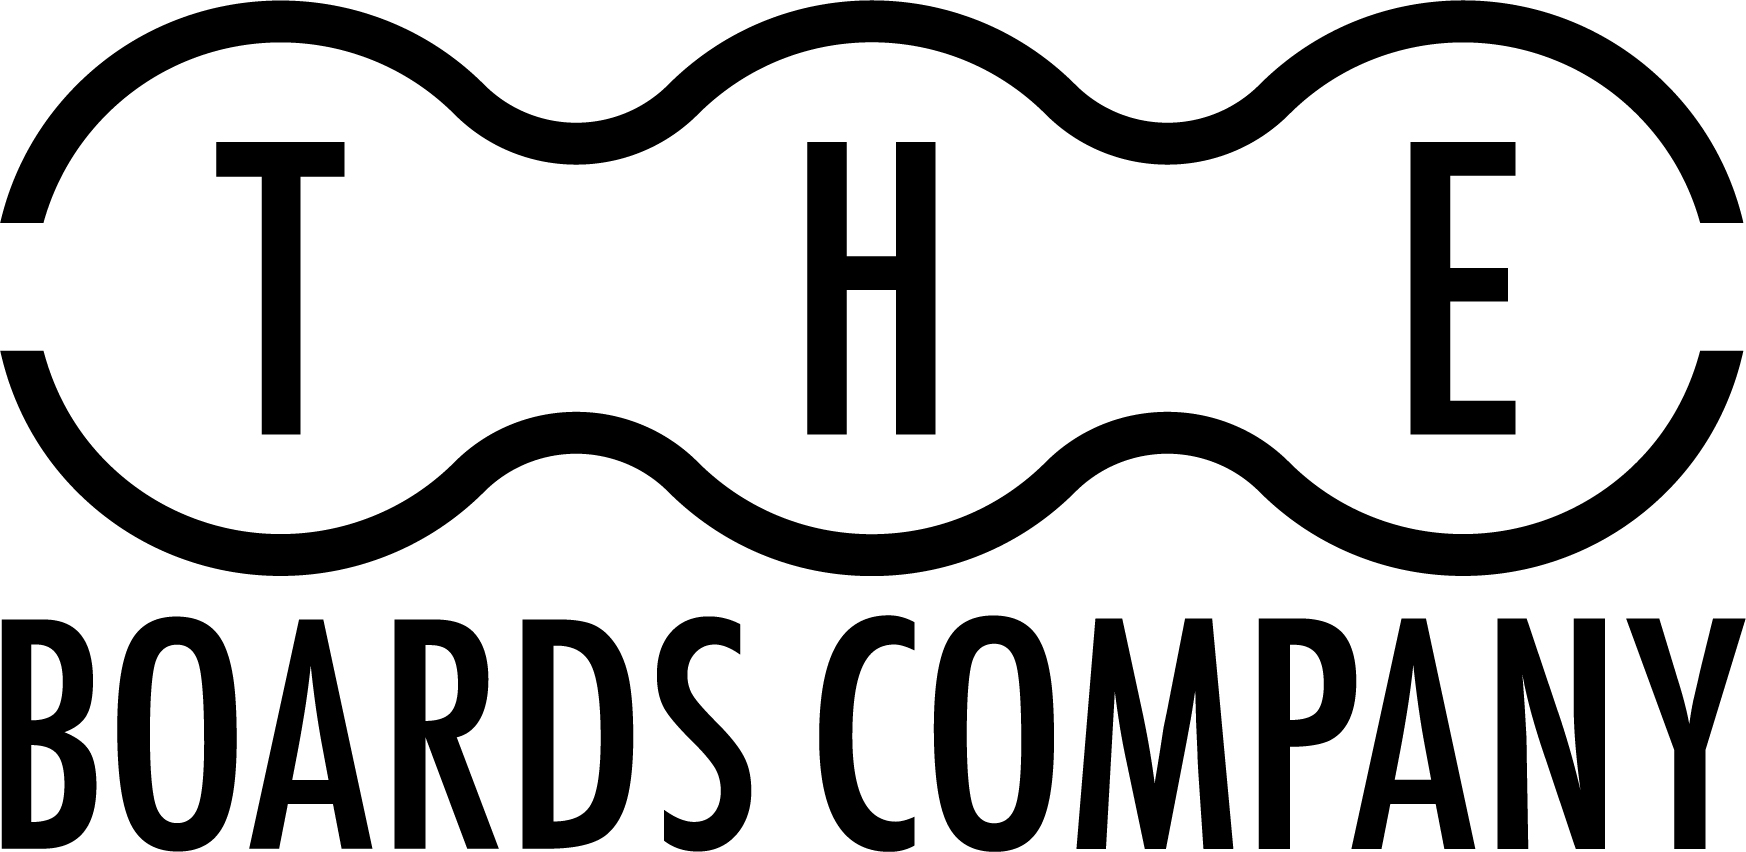 The Board Company logo